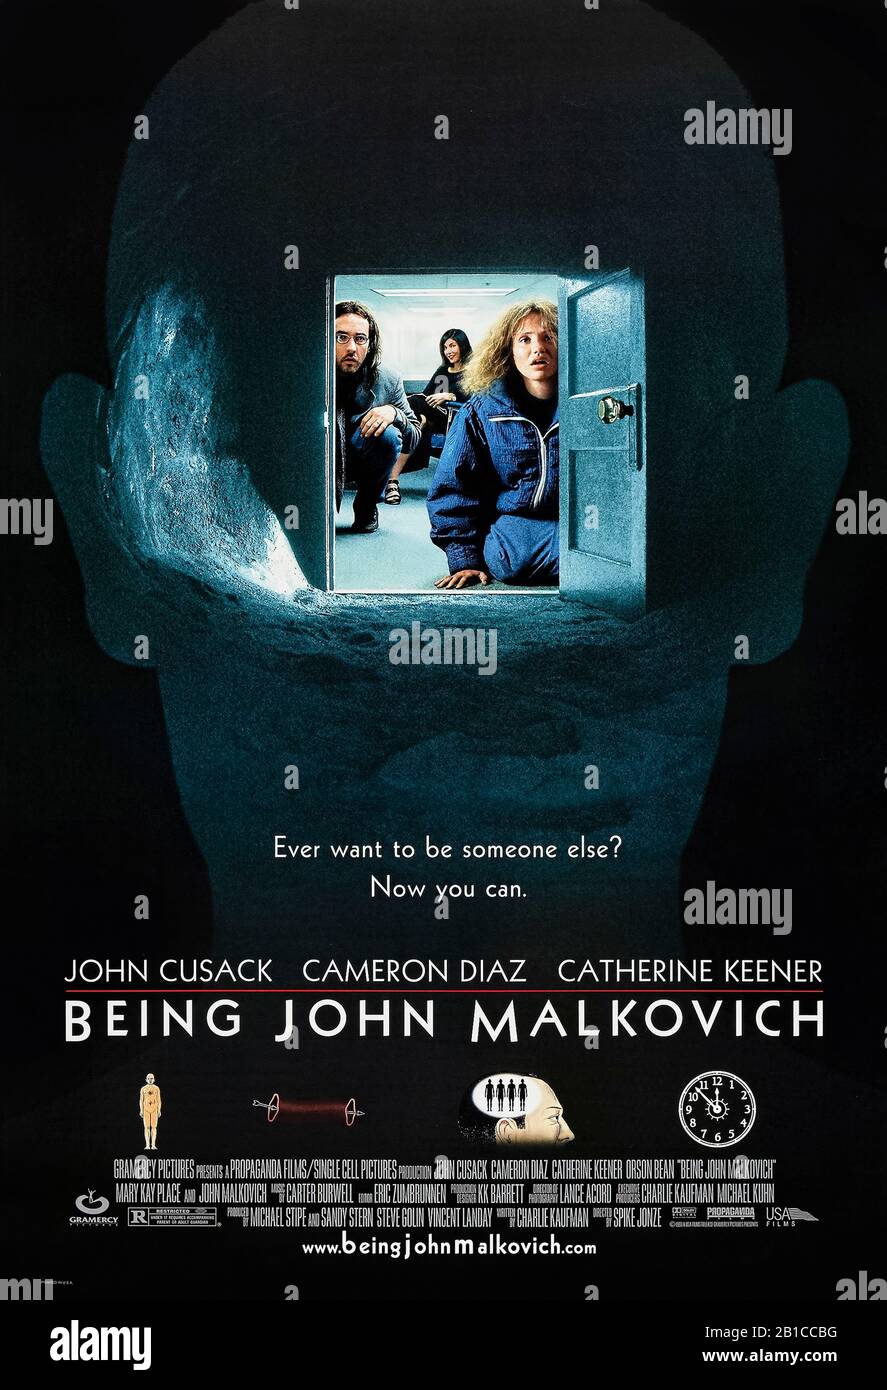 Als John Malkovich (1999) unter der Regie von Spike Jonze und mit John Cusack, Cameron Diaz, Catherine Keener und John Malkovich in den Hauptrollen. Schrullige Komödie, in der ein Puppenspieler ein Geheimportal in den Kopf von John Malkovich entdeckt. Stockfoto